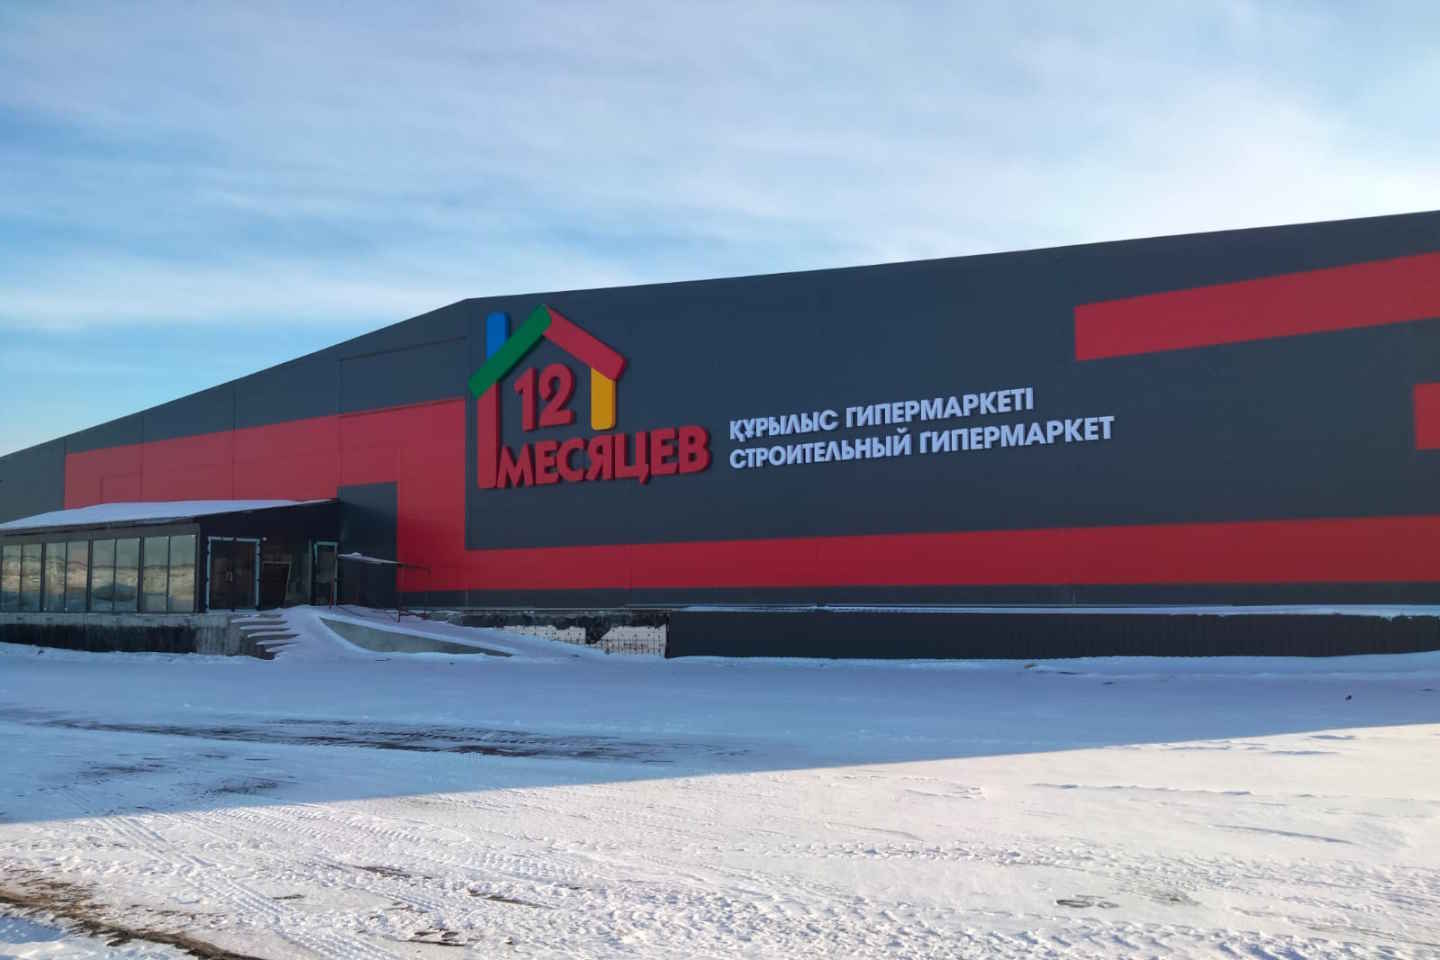 Усть-Каменогорск и ВКО / Гипермаркет строительных материалов "12 месяцев" открывается в Усть-Каменогорске